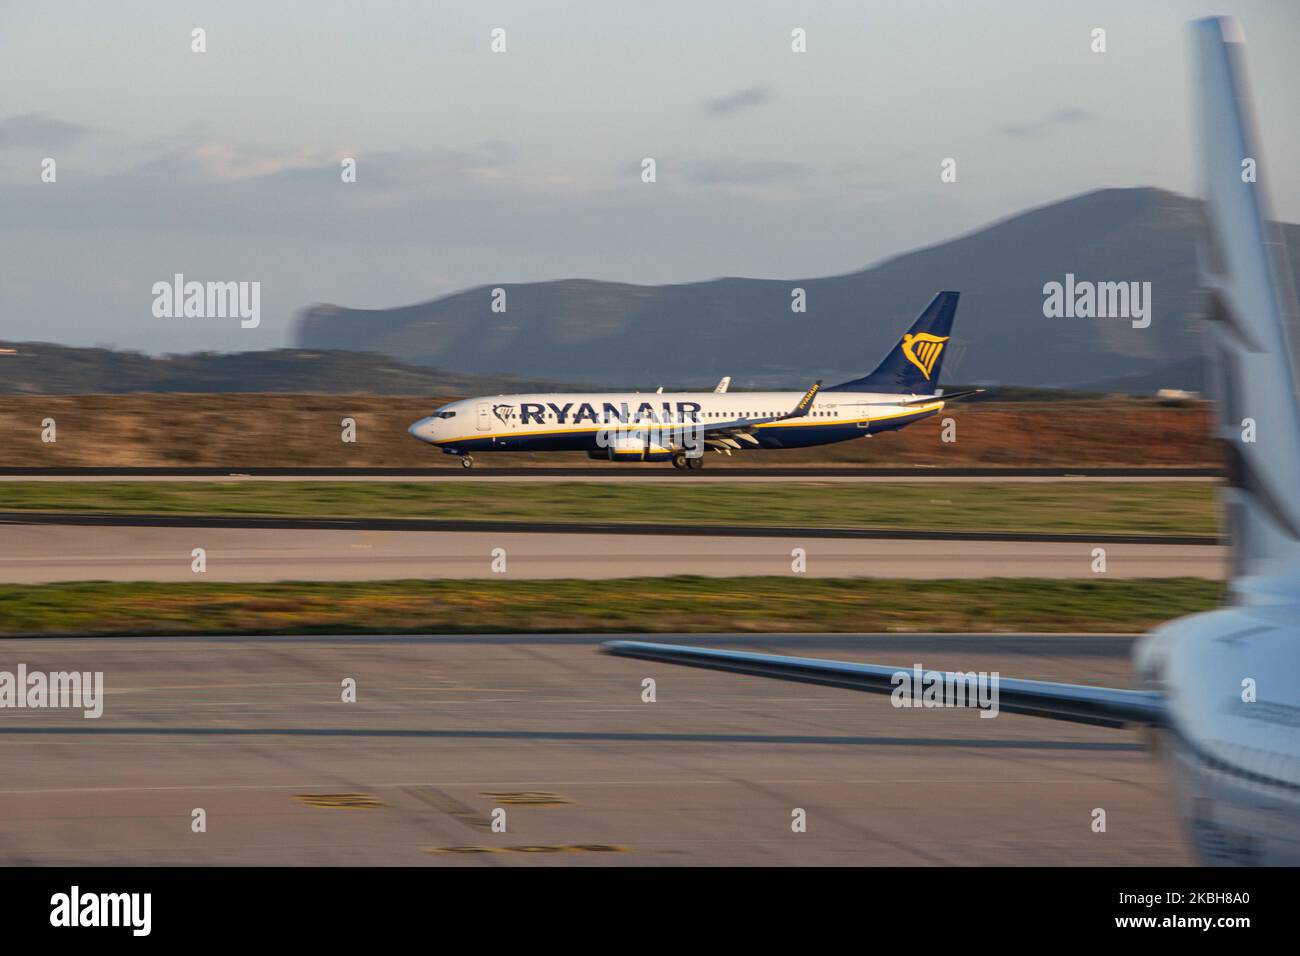 Un aeromobile Ryanair Boeing 737-800 o 737NG visto atterrare sulla pista orientale e tassare all'aeroporto internazionale di Atene ATH LGAV in Grecia. L'aereo B737 ha la registrazione EI-EBF. Ryanair è una compagnia aerea irlandese, un vettore aereo a basso costo e a basso costo. Febbraio 16, 2019 (Foto di Nicolas Economou/NurPhoto) Foto Stock